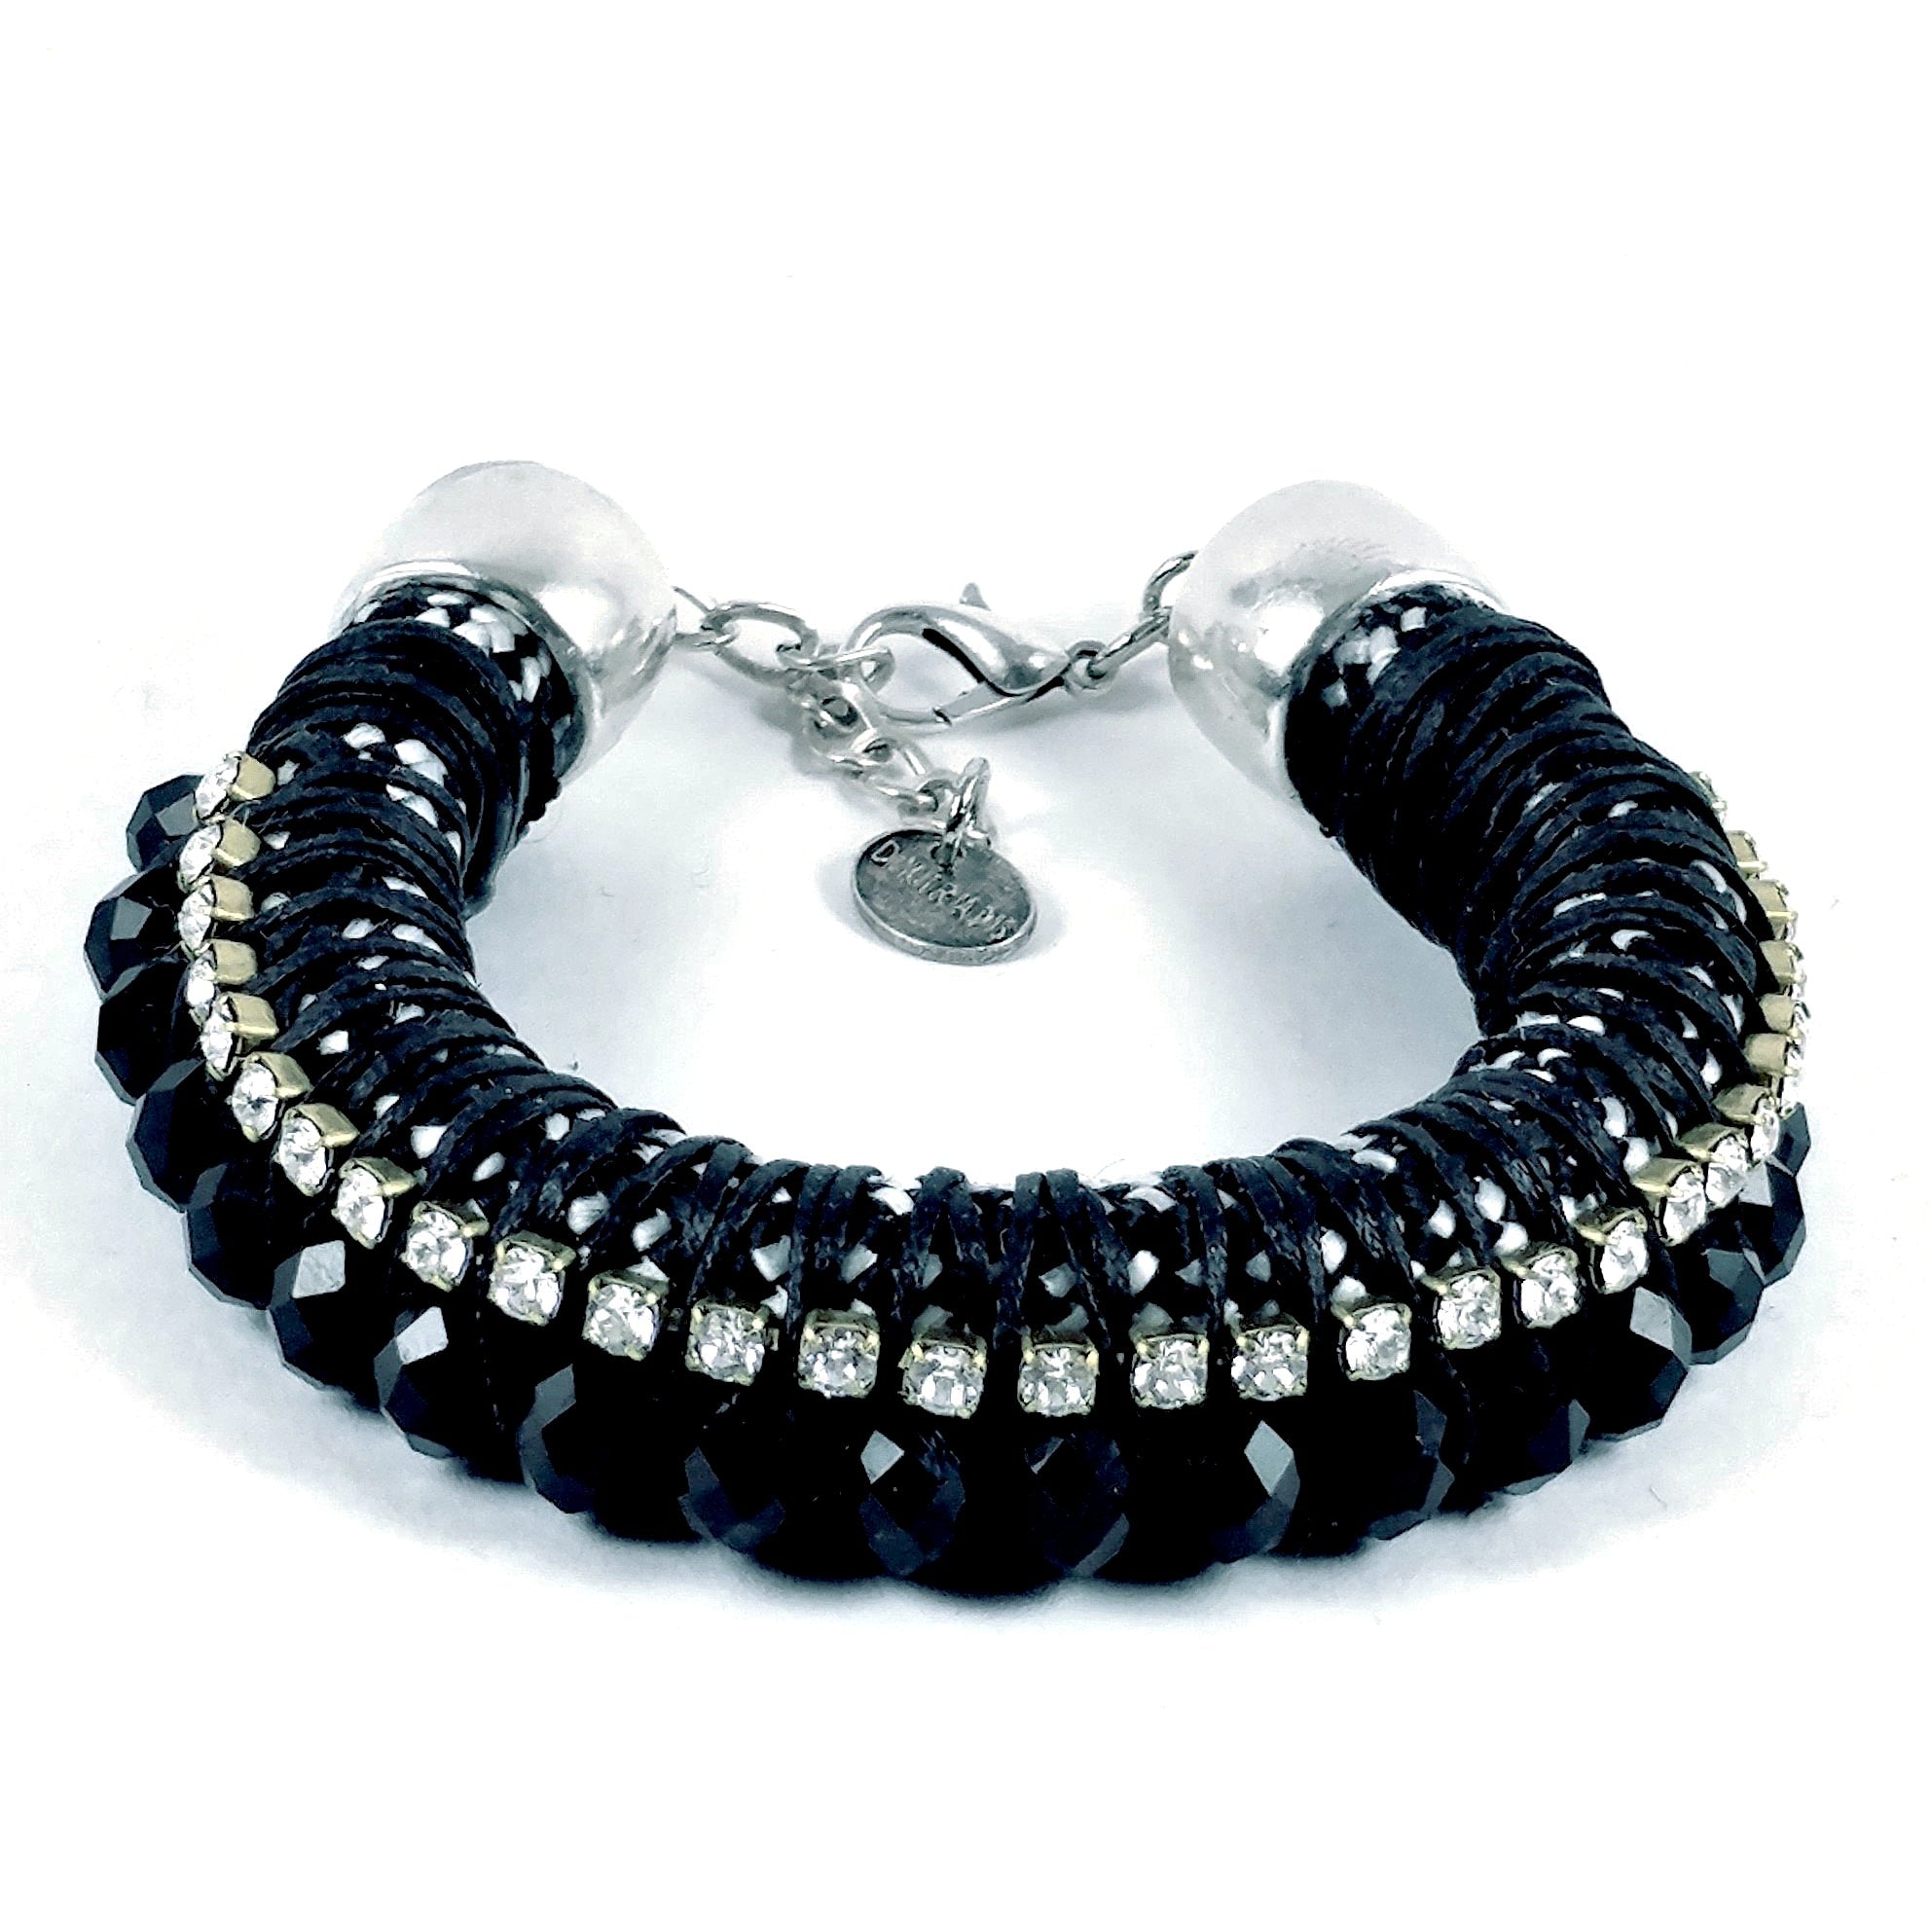 Black Tweed Bracelet with Swarovski Crystals